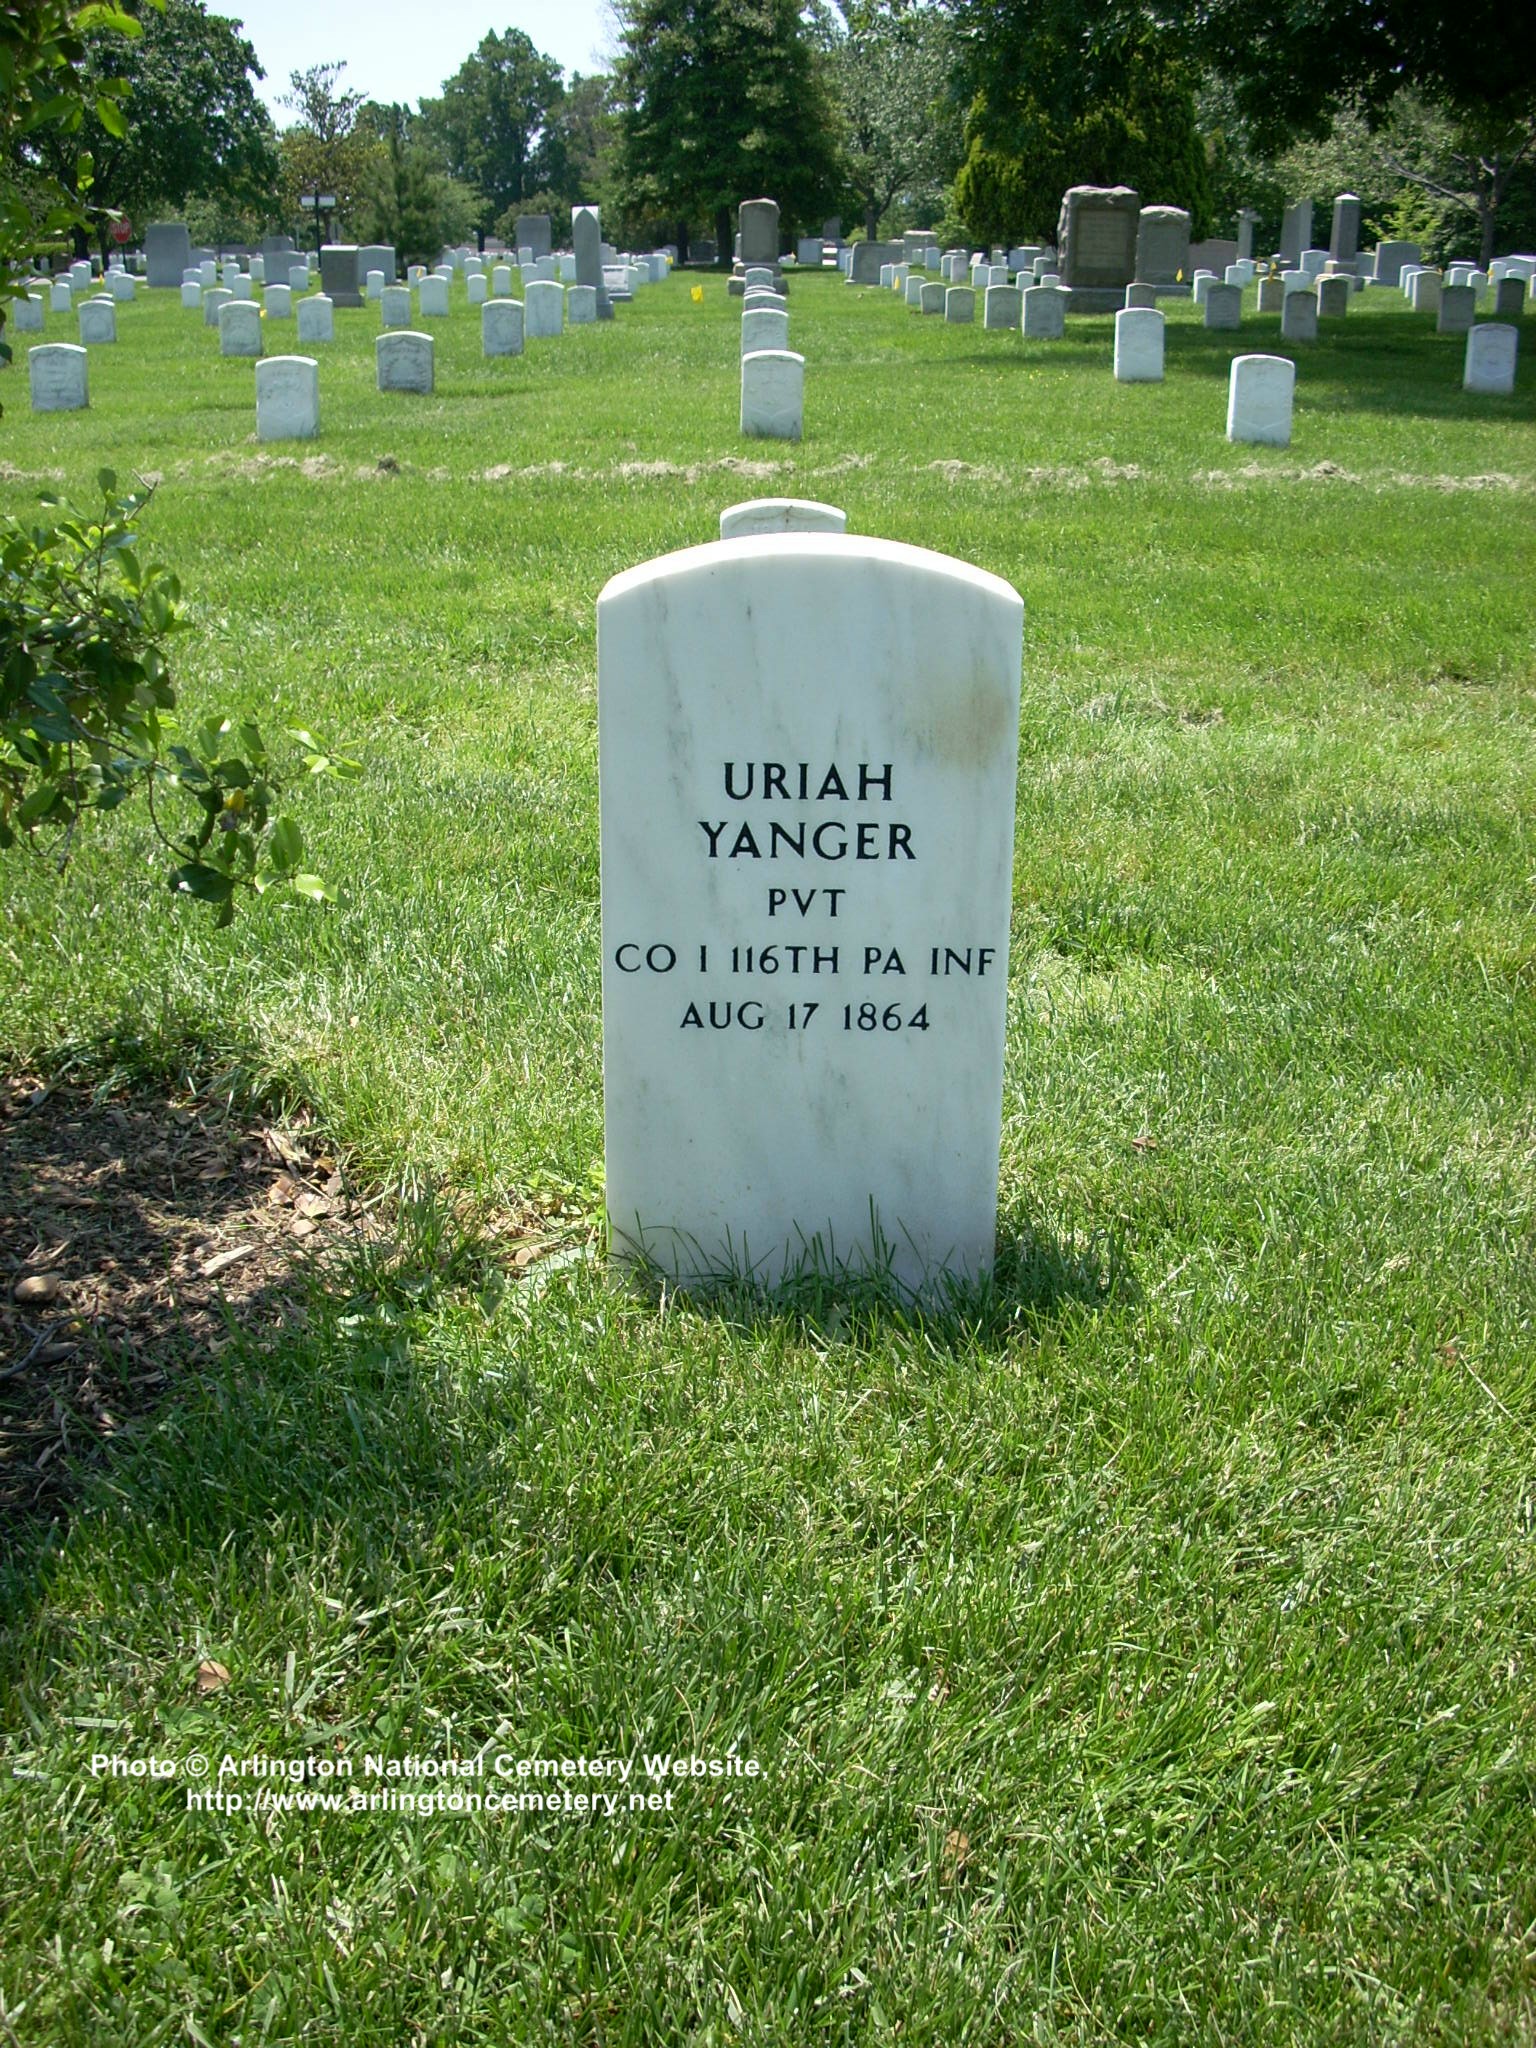 uriah-yanger-gravesite-photo-may-2008-001